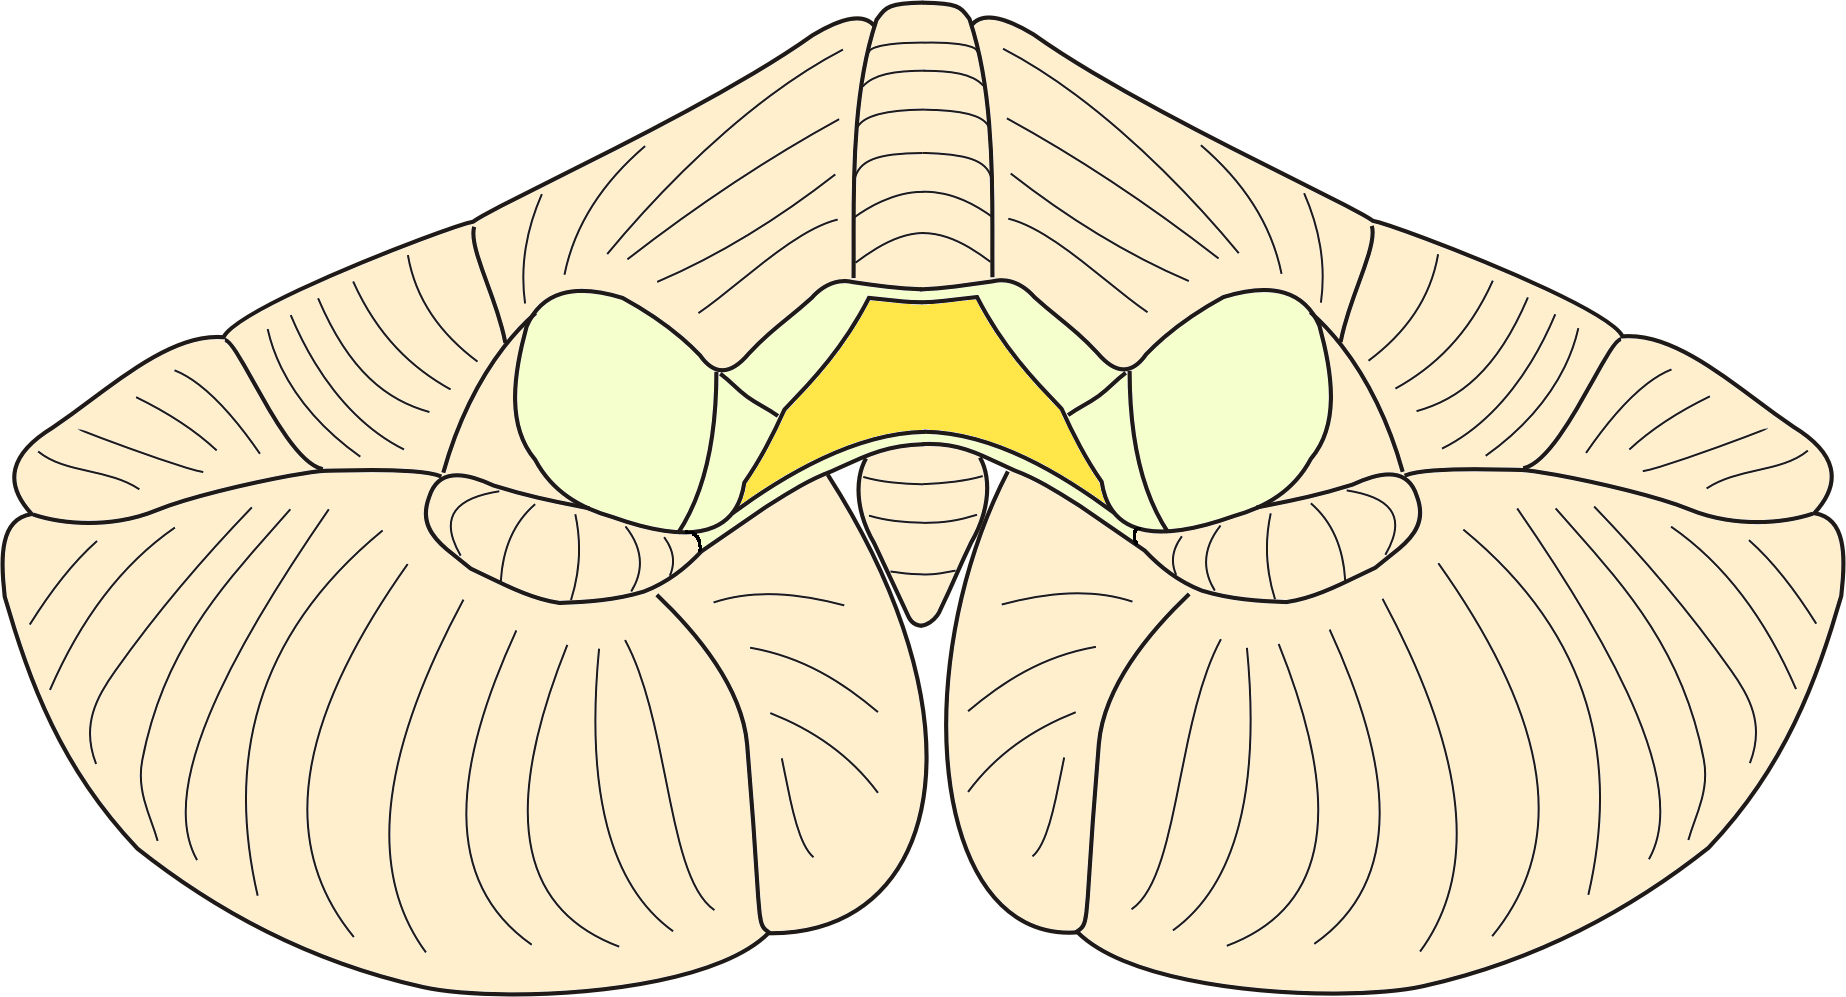 fissure primaire face supérieure fissure horizontale hémisphère flocculus face inférieure tonsille dorsal Vue latérale gauche du cervelet vermis droite face supérieure hémisphère fissure horizontale